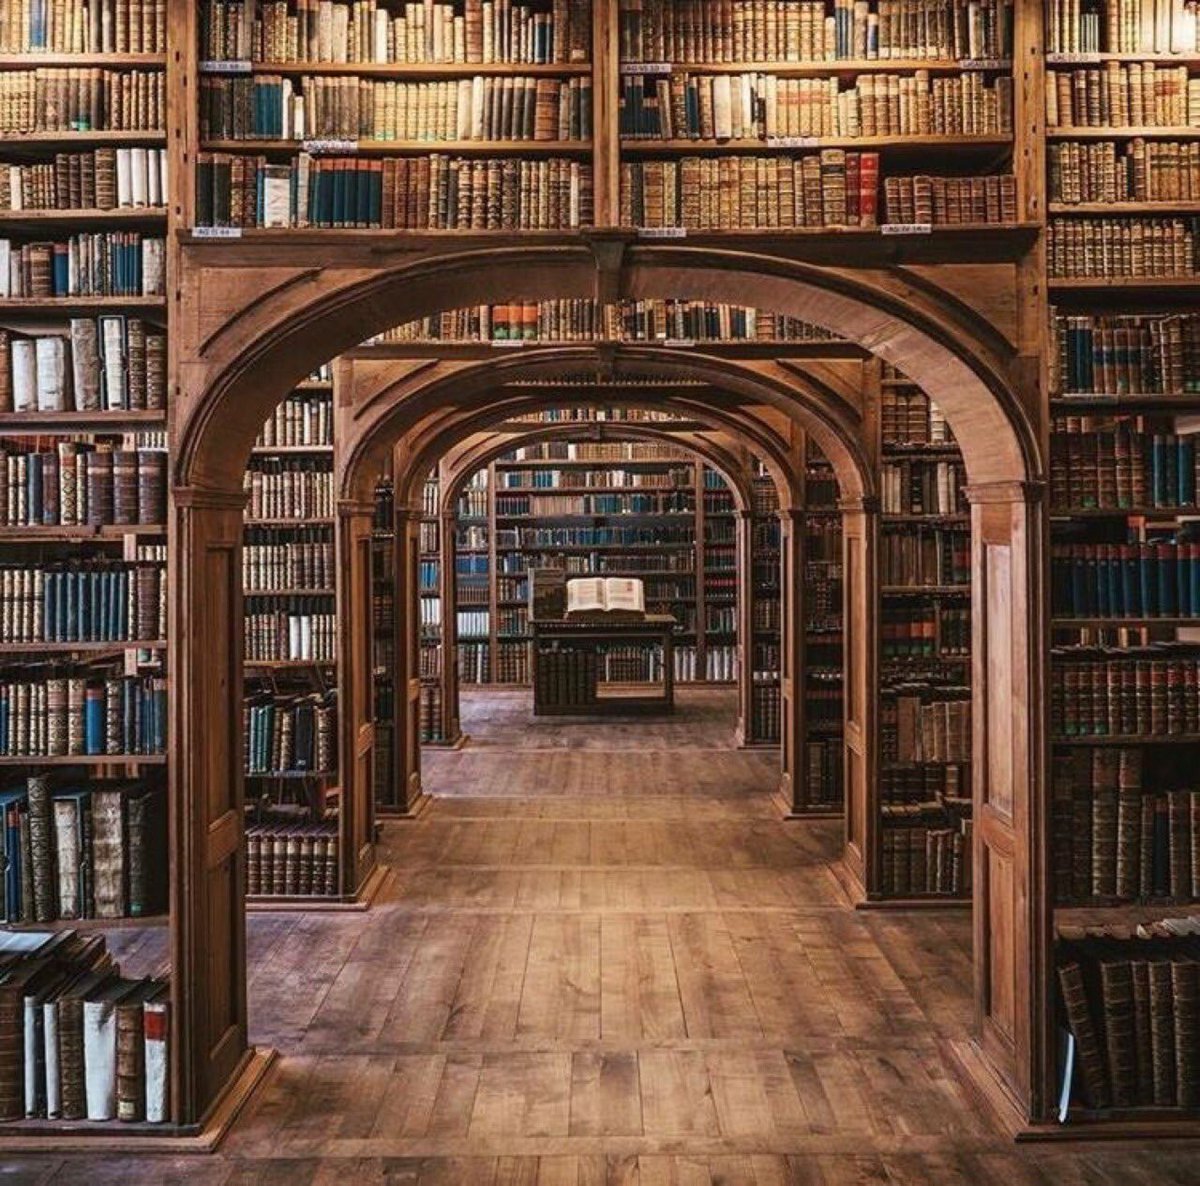 Библиотека без людей. Красивая библиотека. Книжные полки в библиотеке. Старинная библиотека. Много книг.